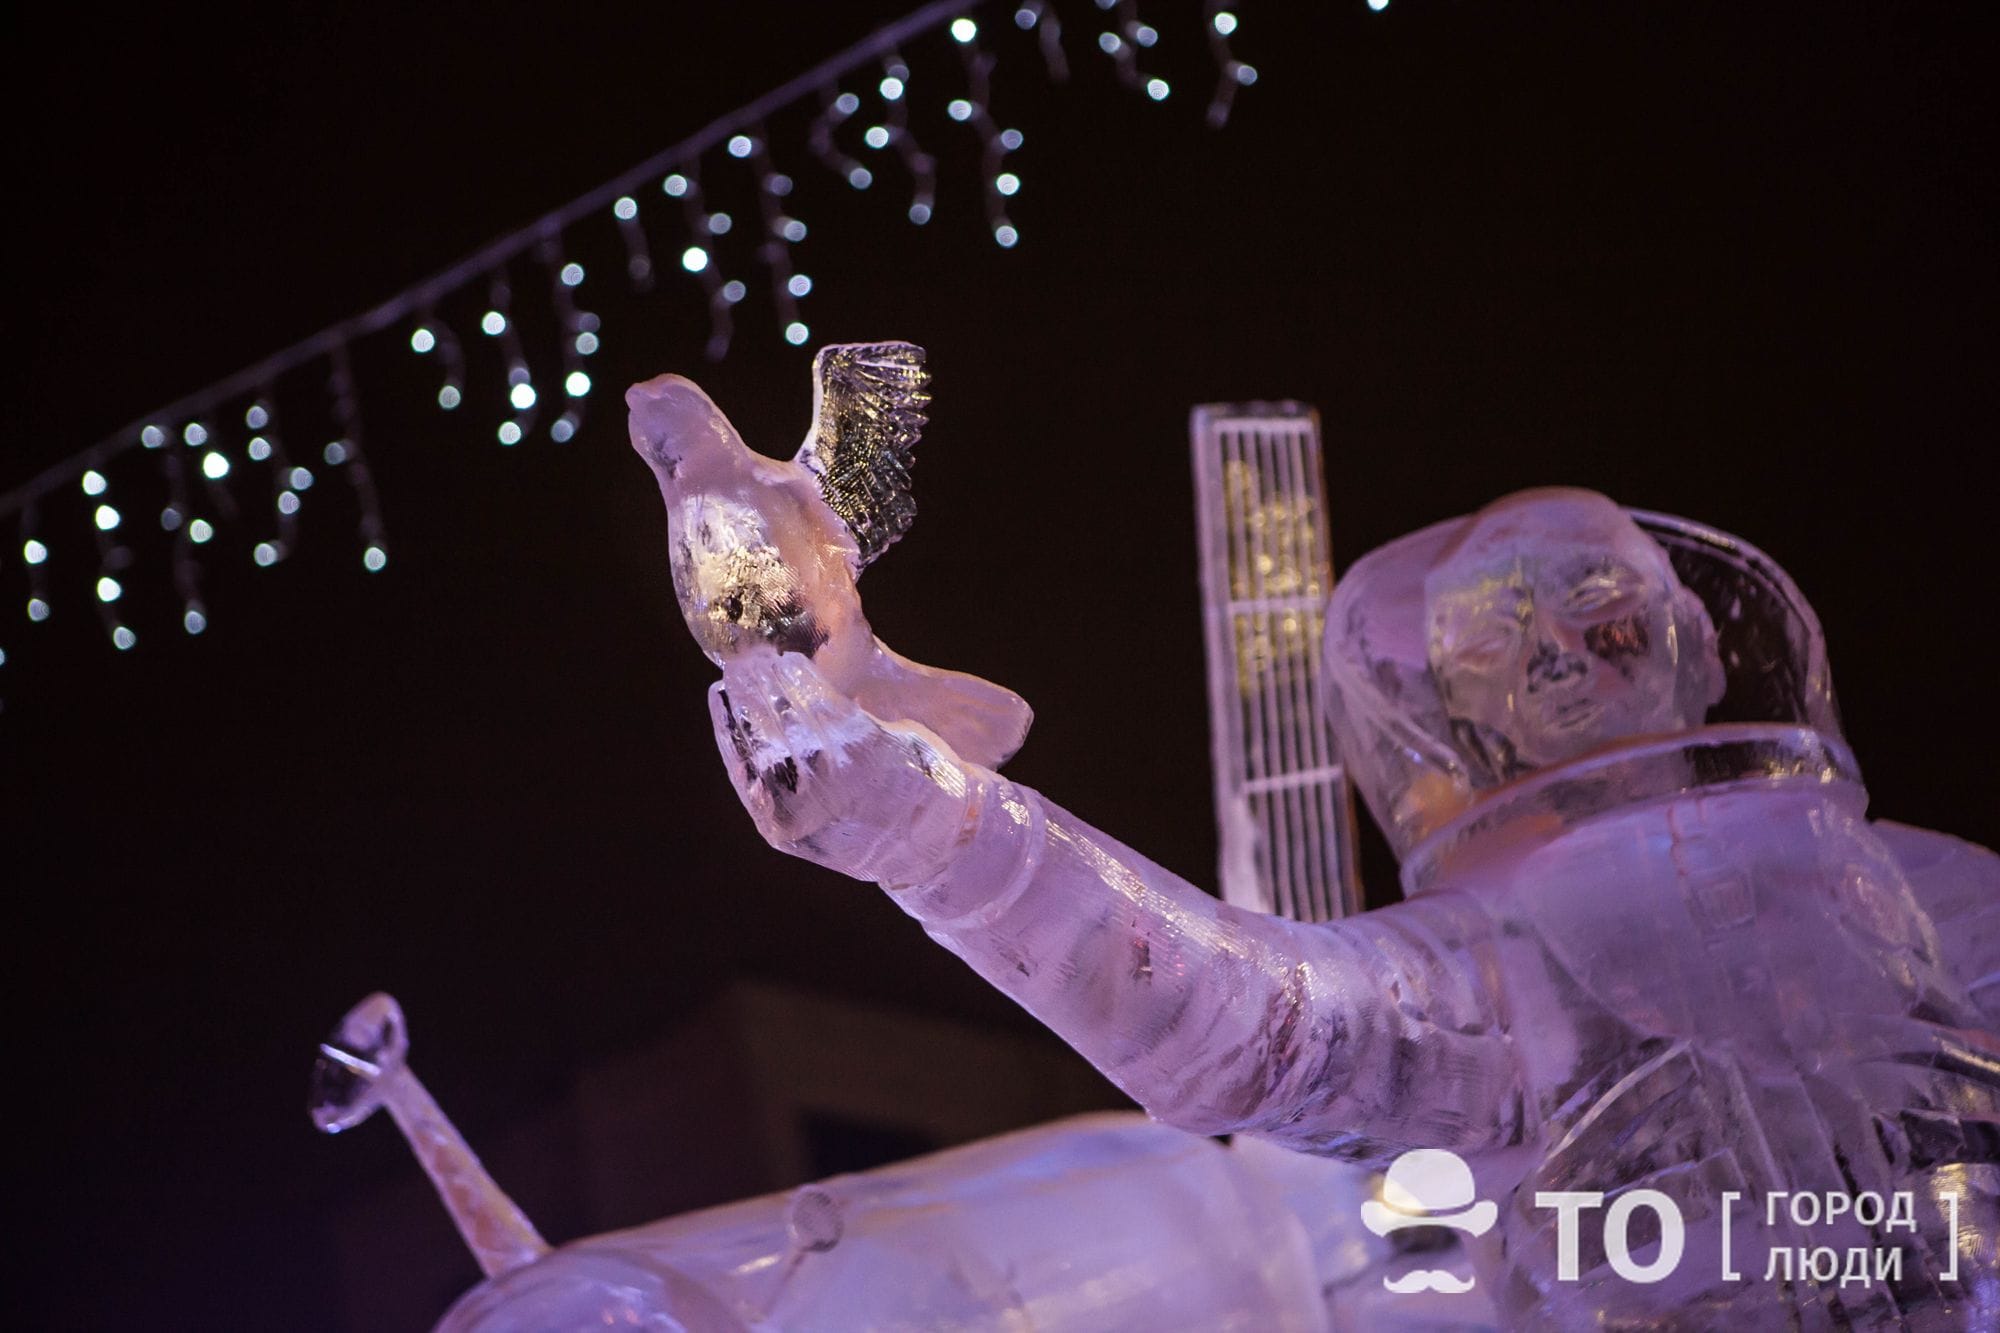 Ново-Cоборная, Новый год ❄, Томские новости, ледовые скульптуры новособорная Томичей просят бережно относиться к ледовым скульптурам на Ново-Соборной